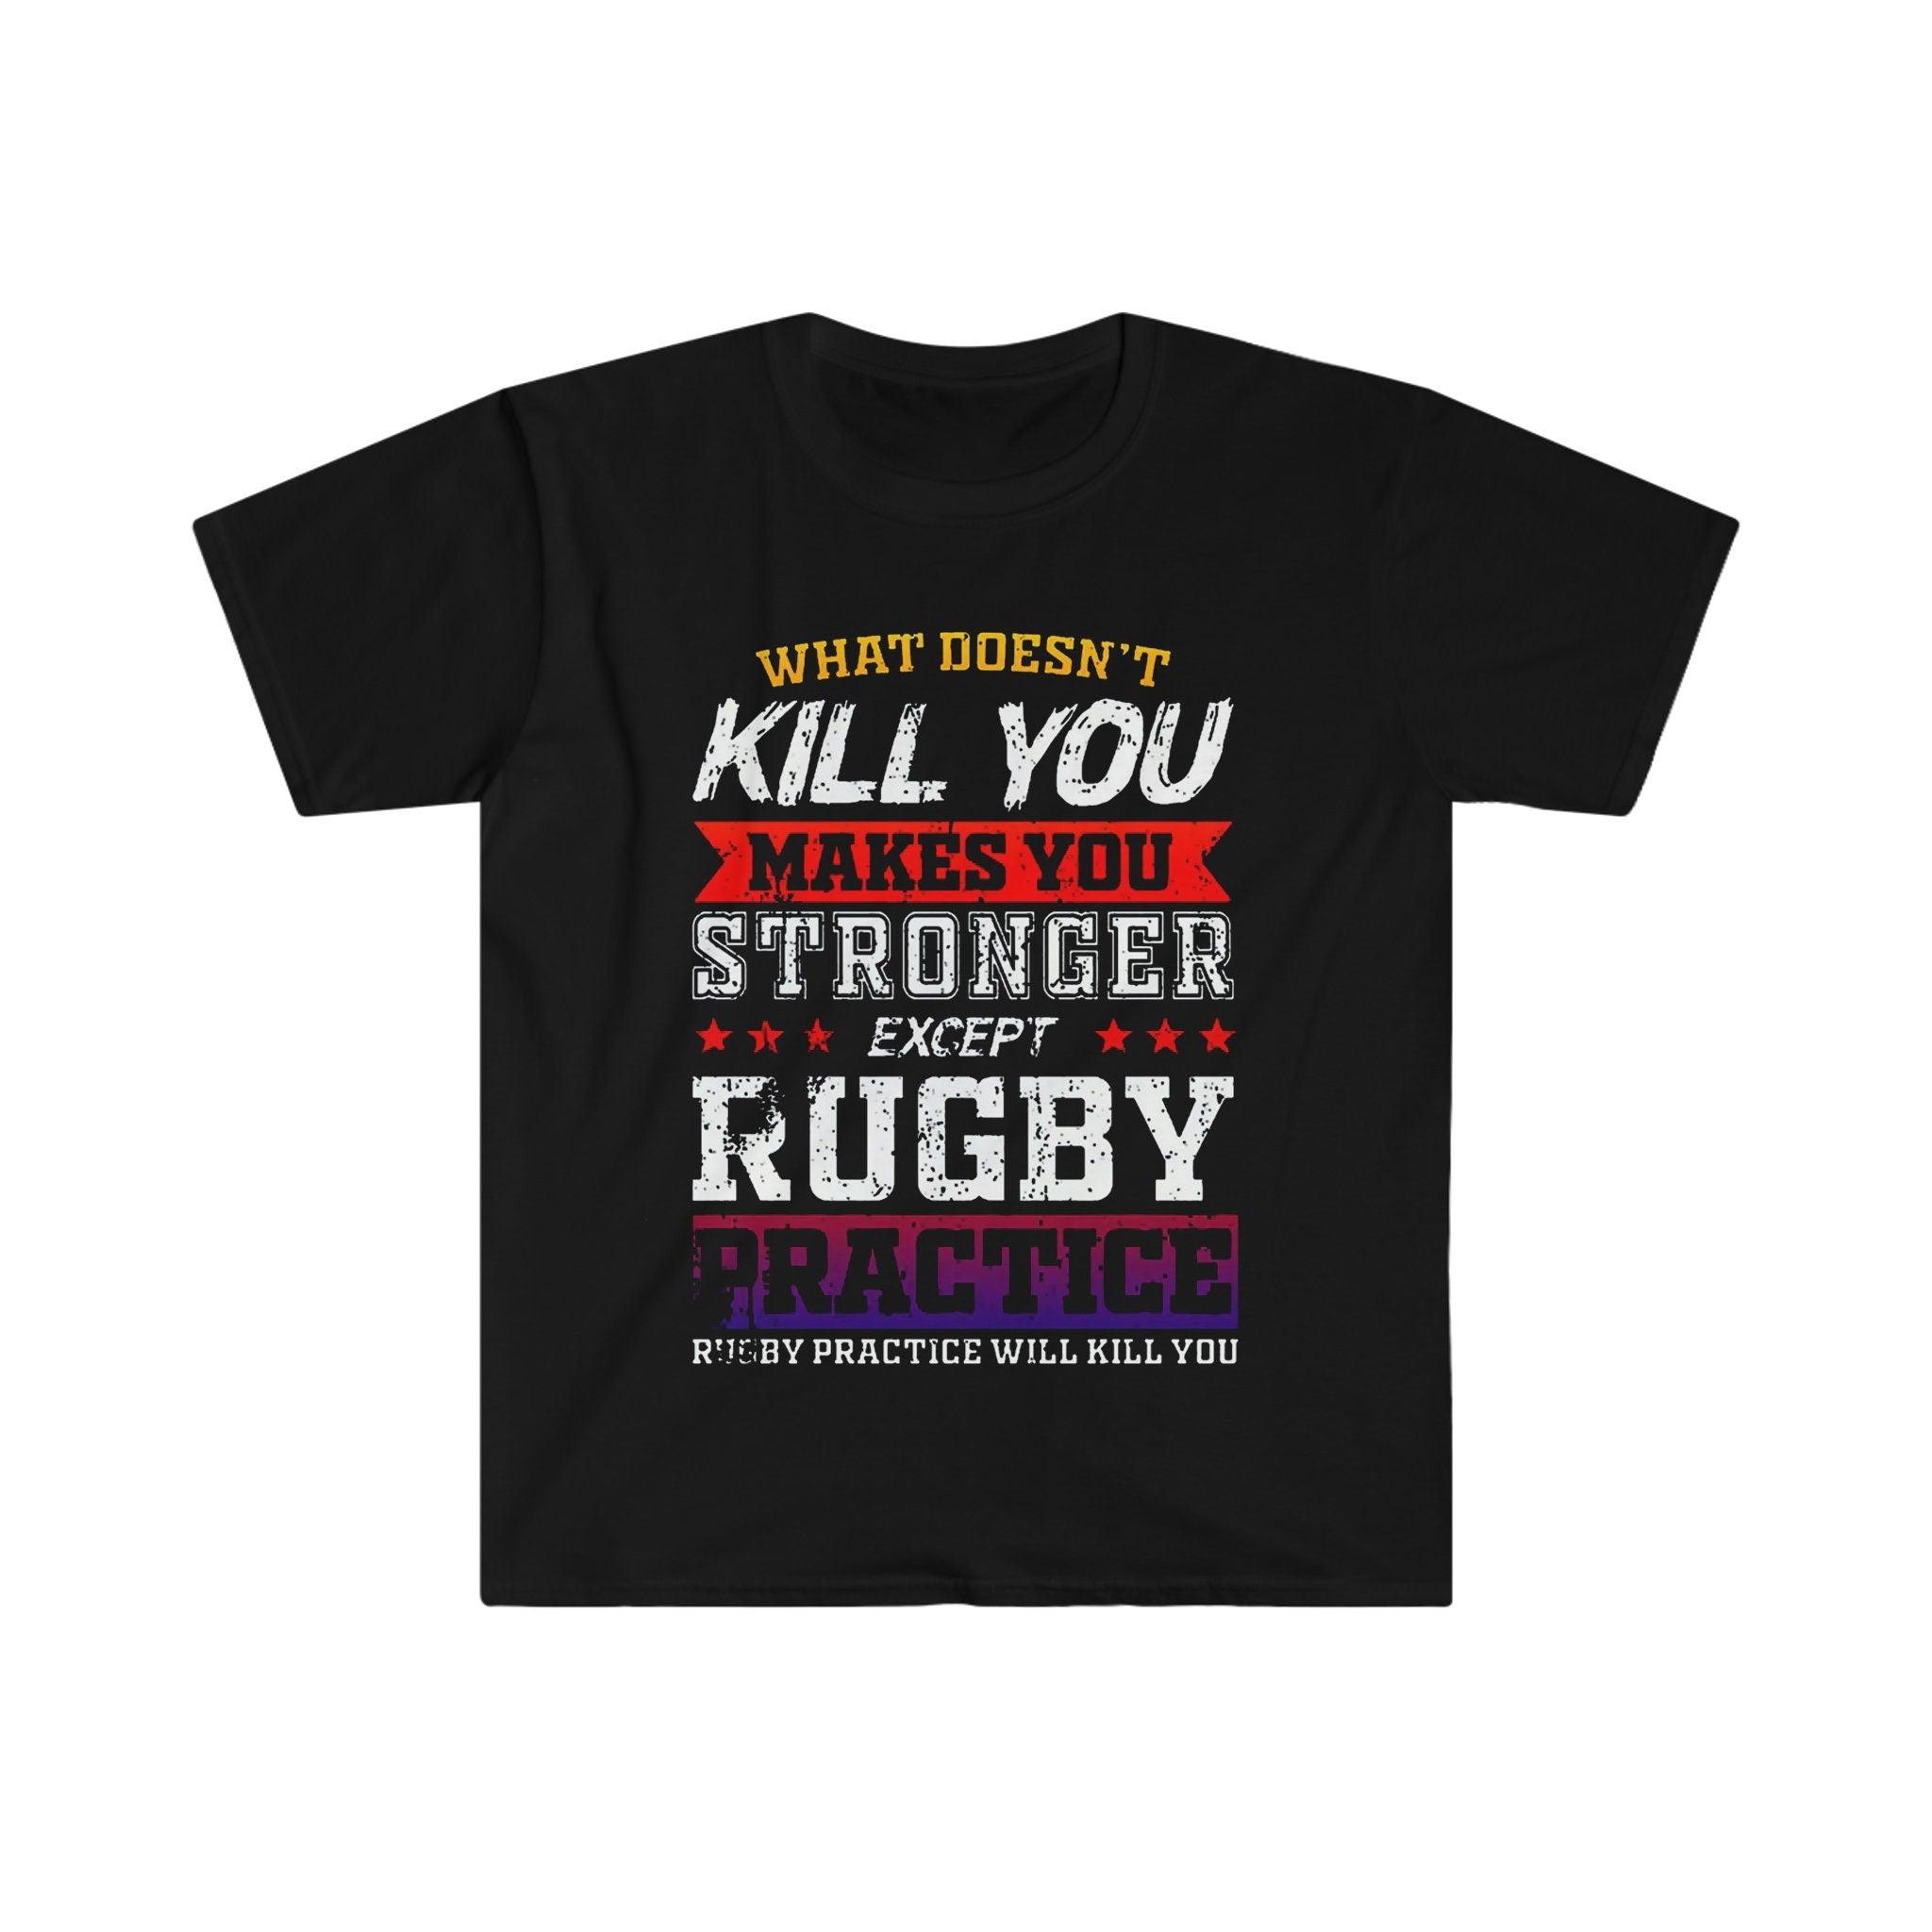 럭비 연습을 제외하고 당신을 죽이지 않는 것이 당신을 더 강하게 만듭니다. 럭비 연습이 당신을 죽일 것입니다 티셔츠 - plusminusco.com